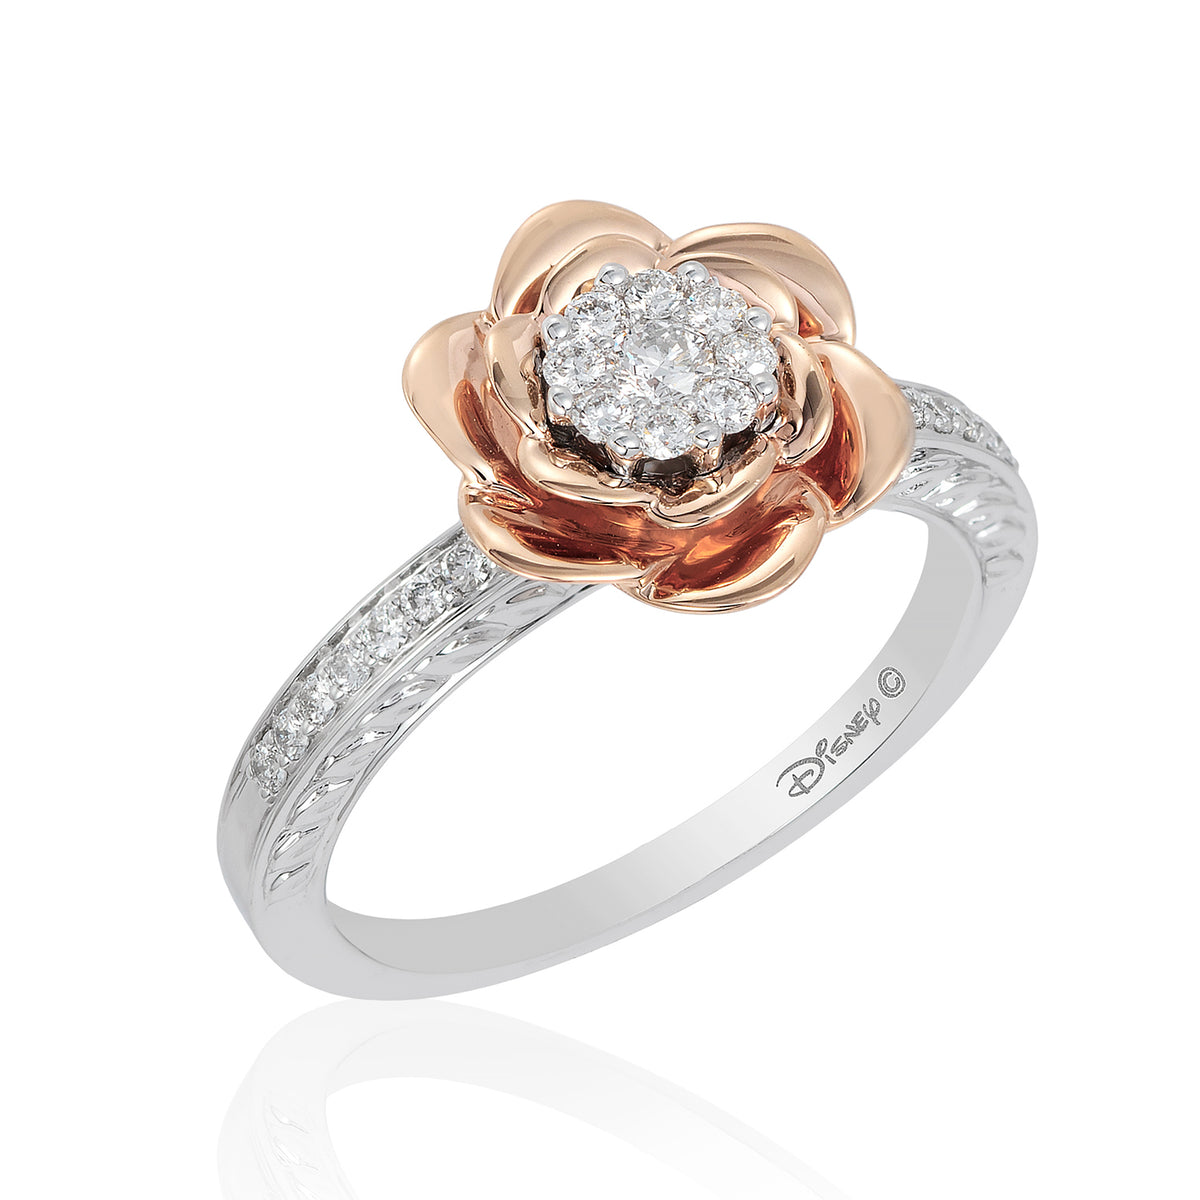 Disney Belle Inspired Diamond Ring